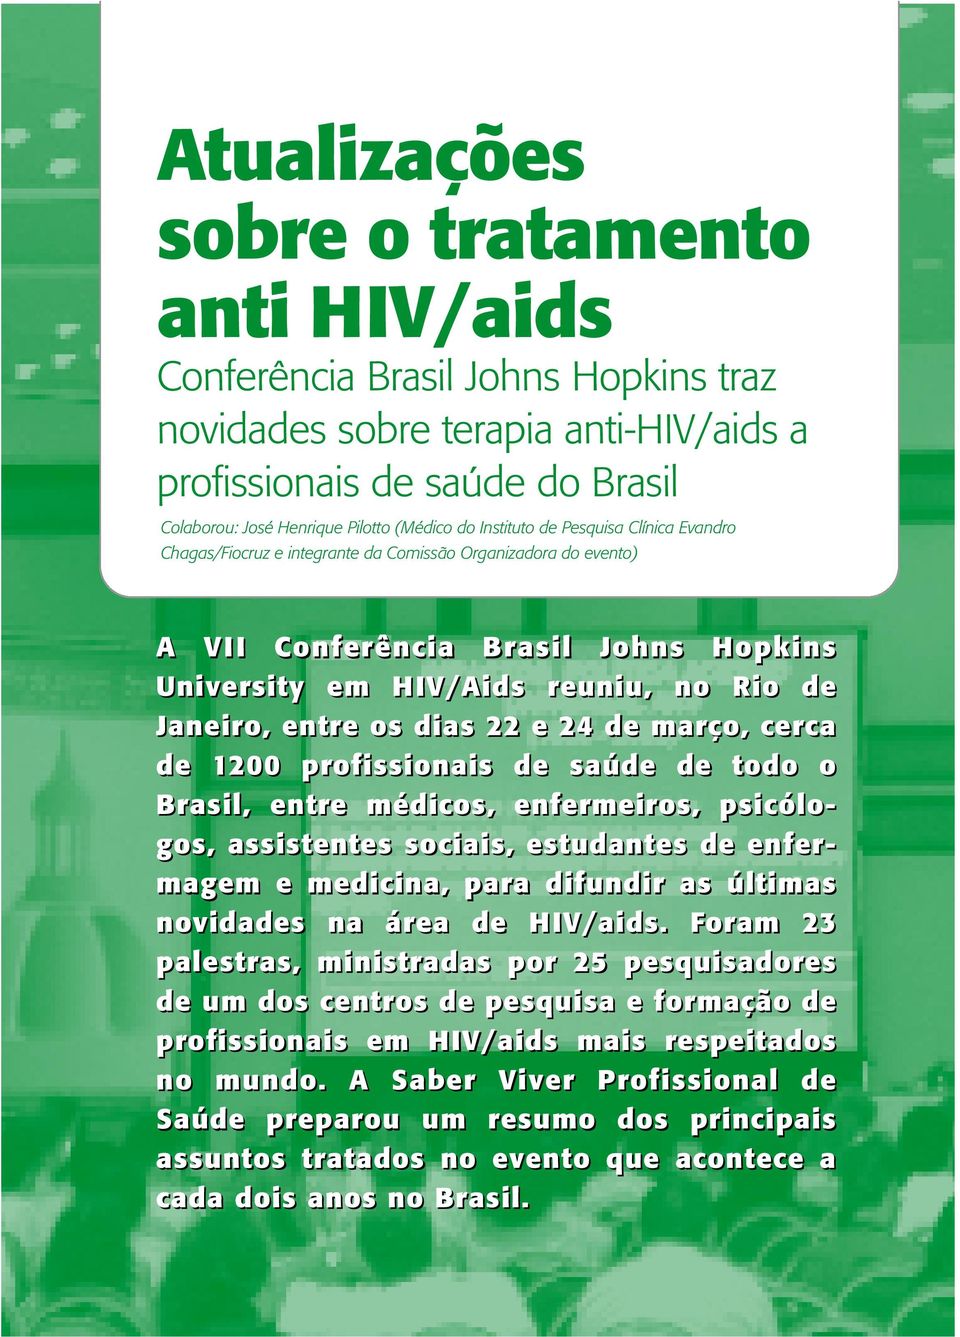 reuniu, no Rio de Janeiro, entre os dias 22 e 24 de março, cerca de 1200 profissionais de saúde de todo o Brasil, entre médicos, enfermeiros, psicólogos, assistentes sociais, estudantes de enfermagem